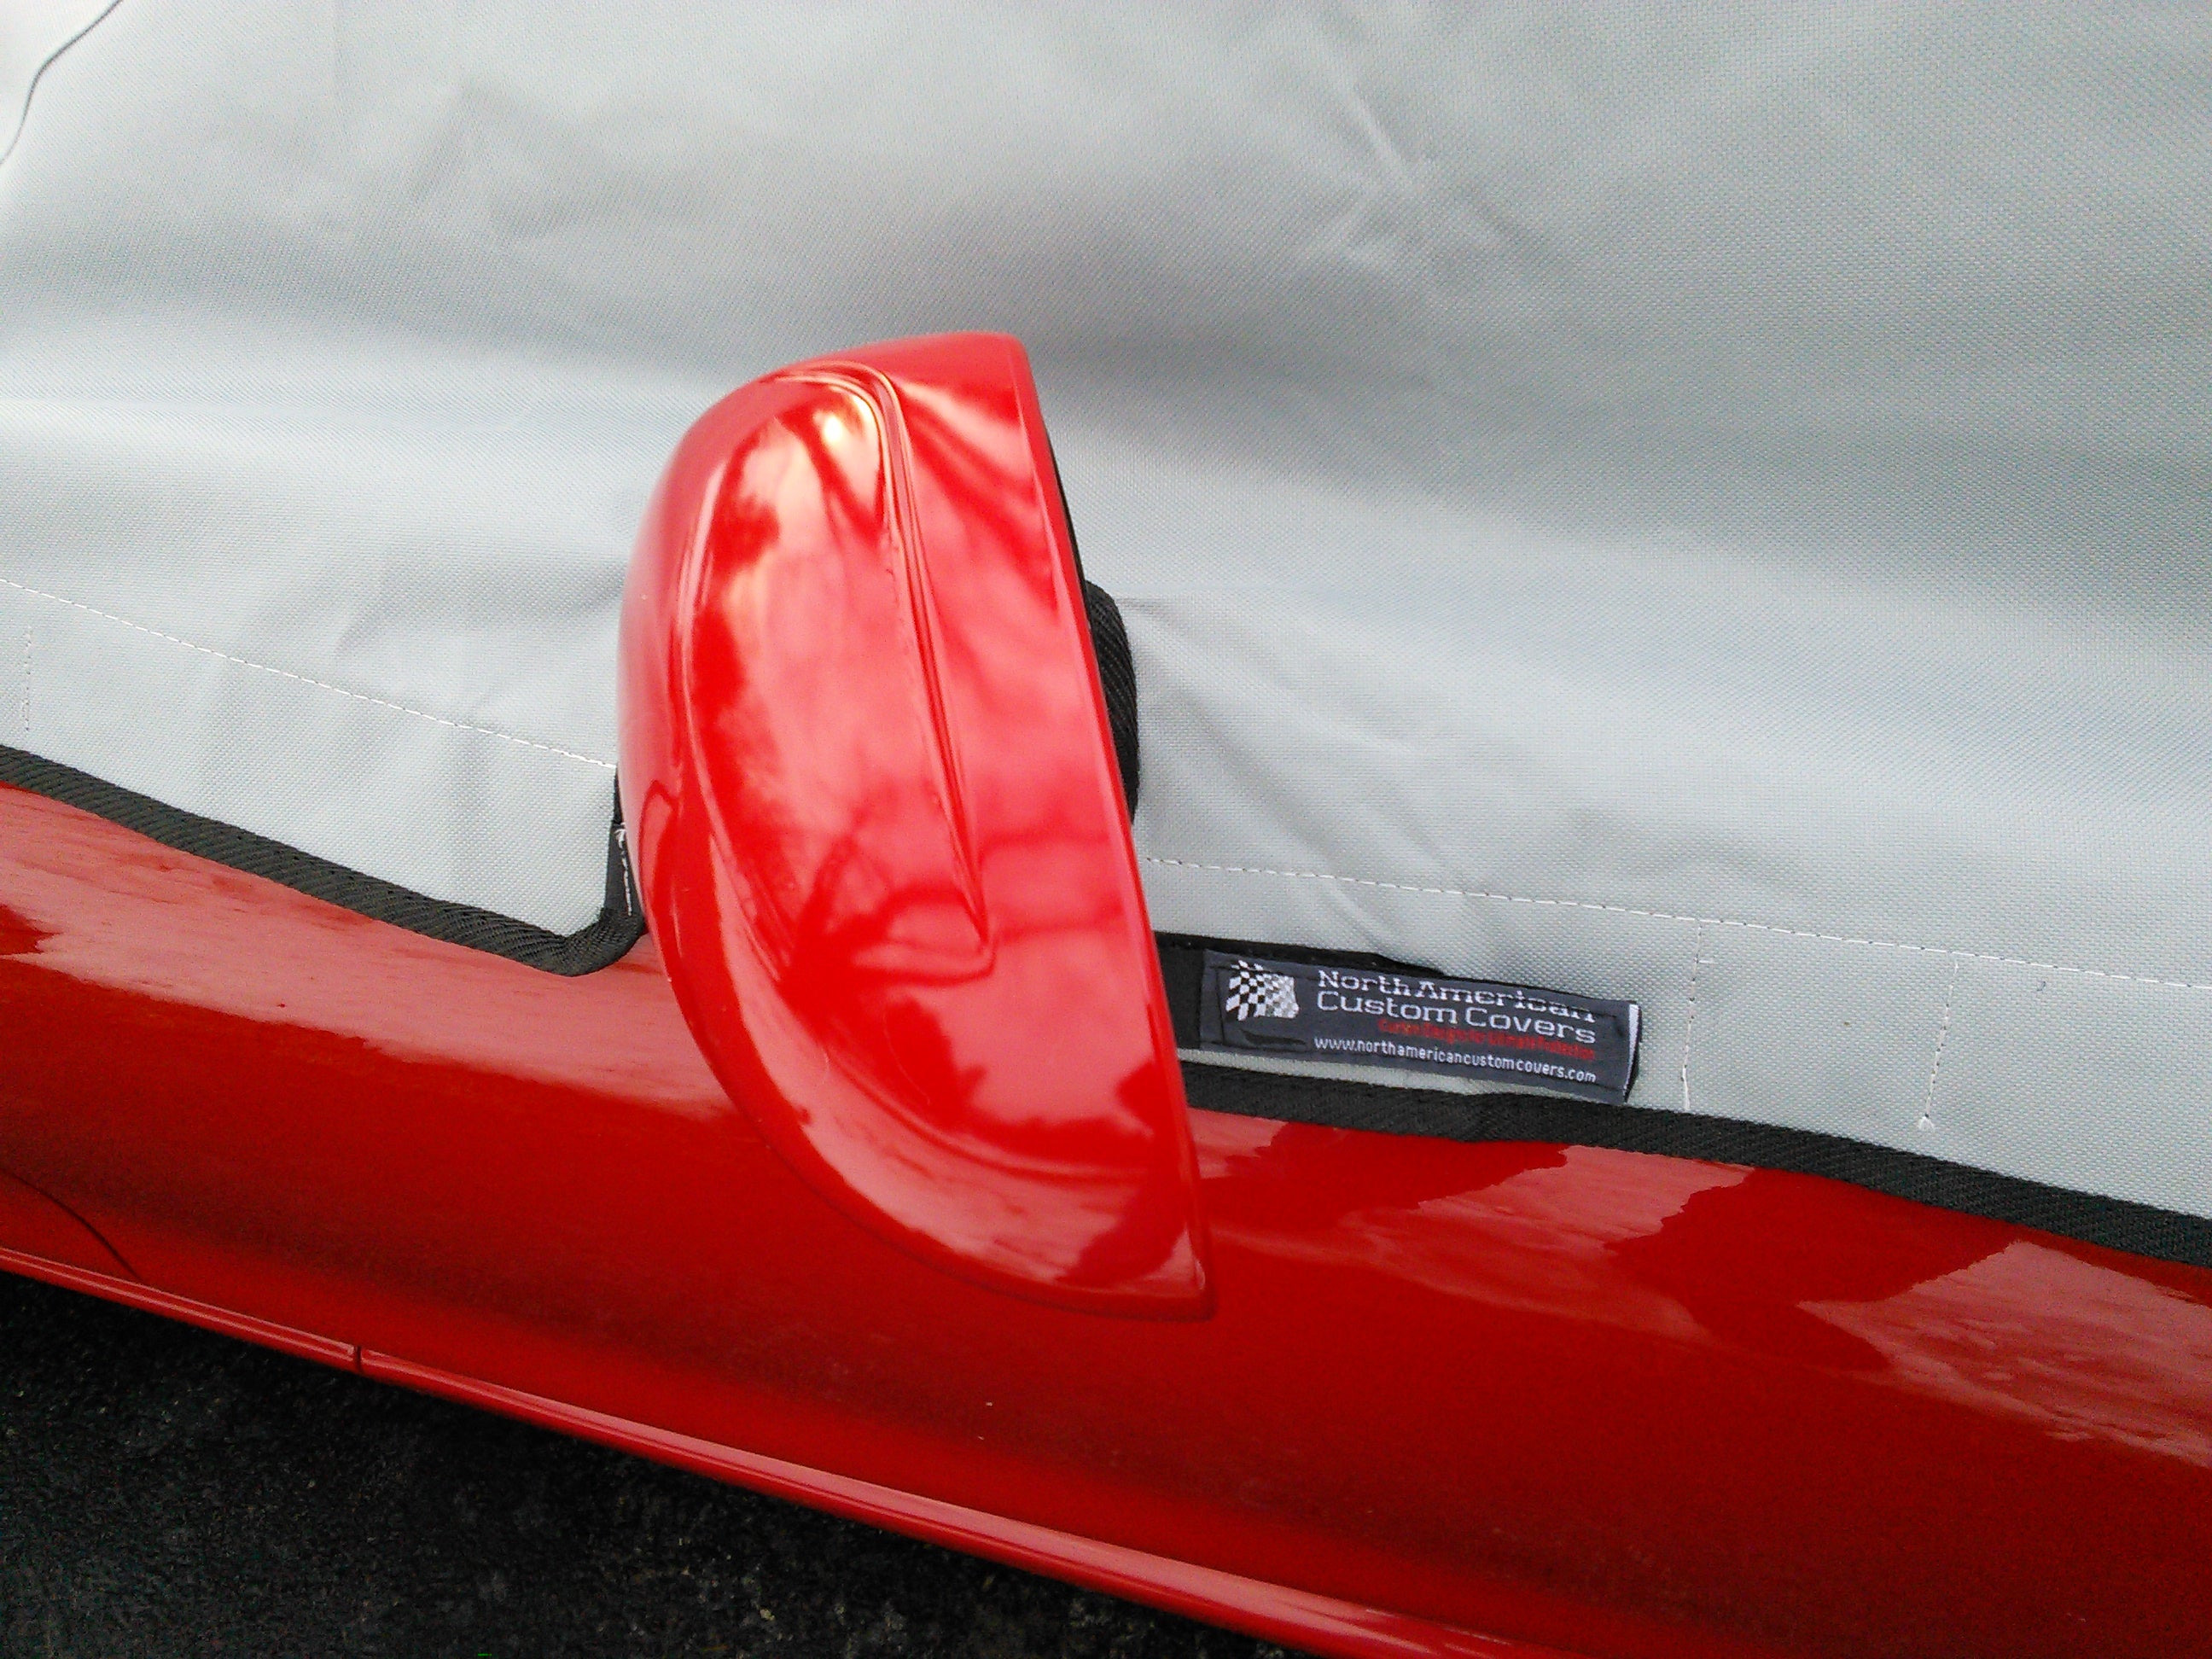 Media cubierta protectora de techo Soft Top para Mazda Miata MX5 Mk1 (NA) Mk2 (NB) Mk2.5 - 1989 a 2005 (113G) - GRIS